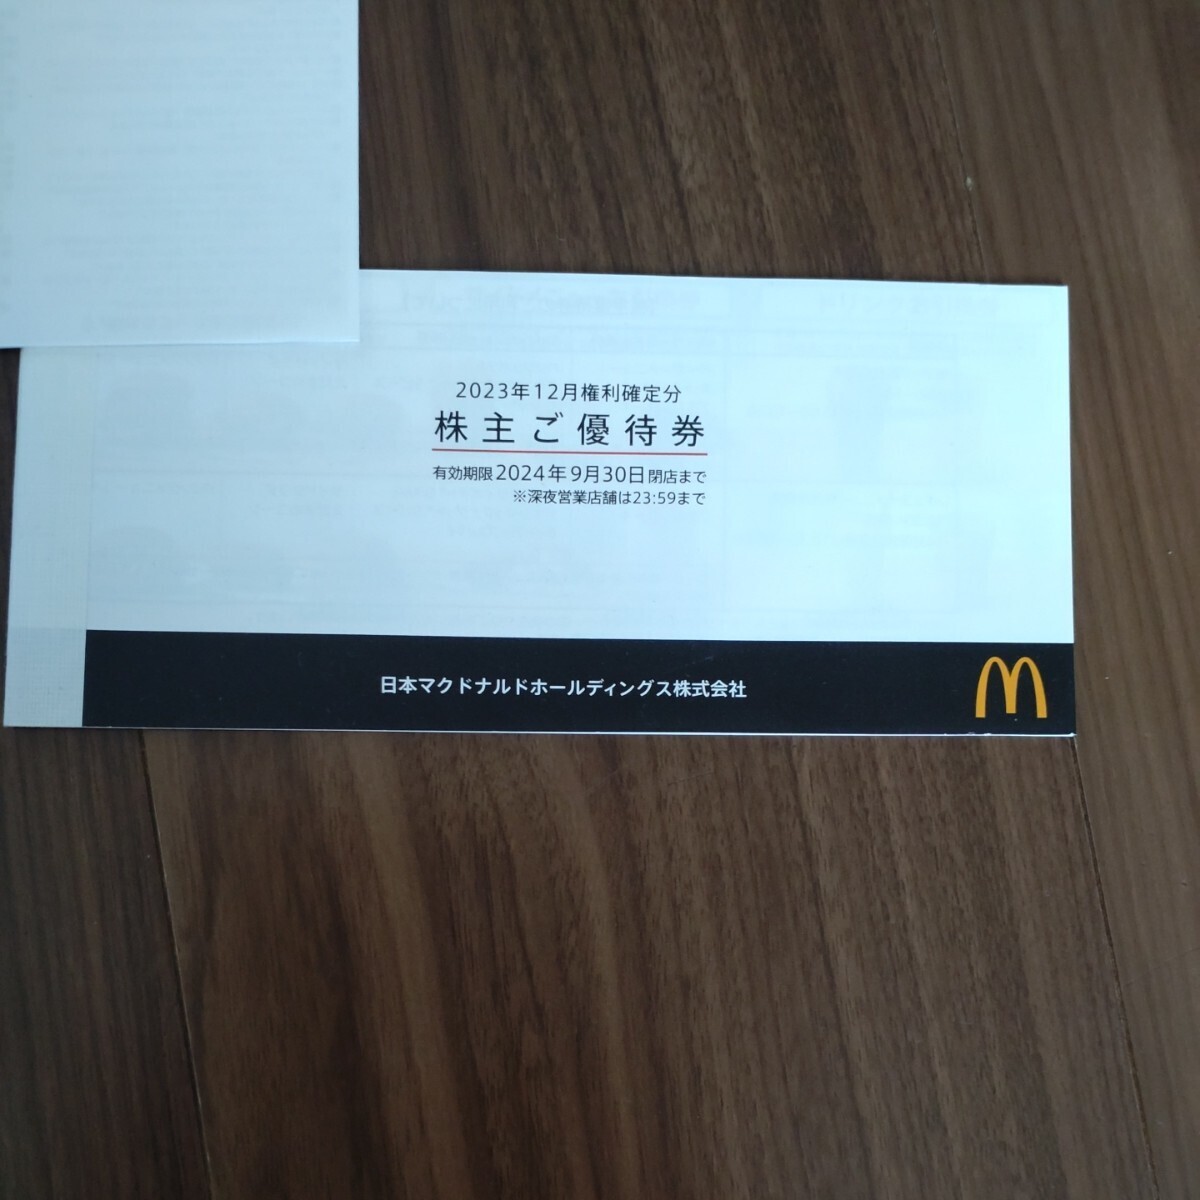  Япония McDonald's акционер пригласительный билет анонимность рассылка бесплатная доставка ②